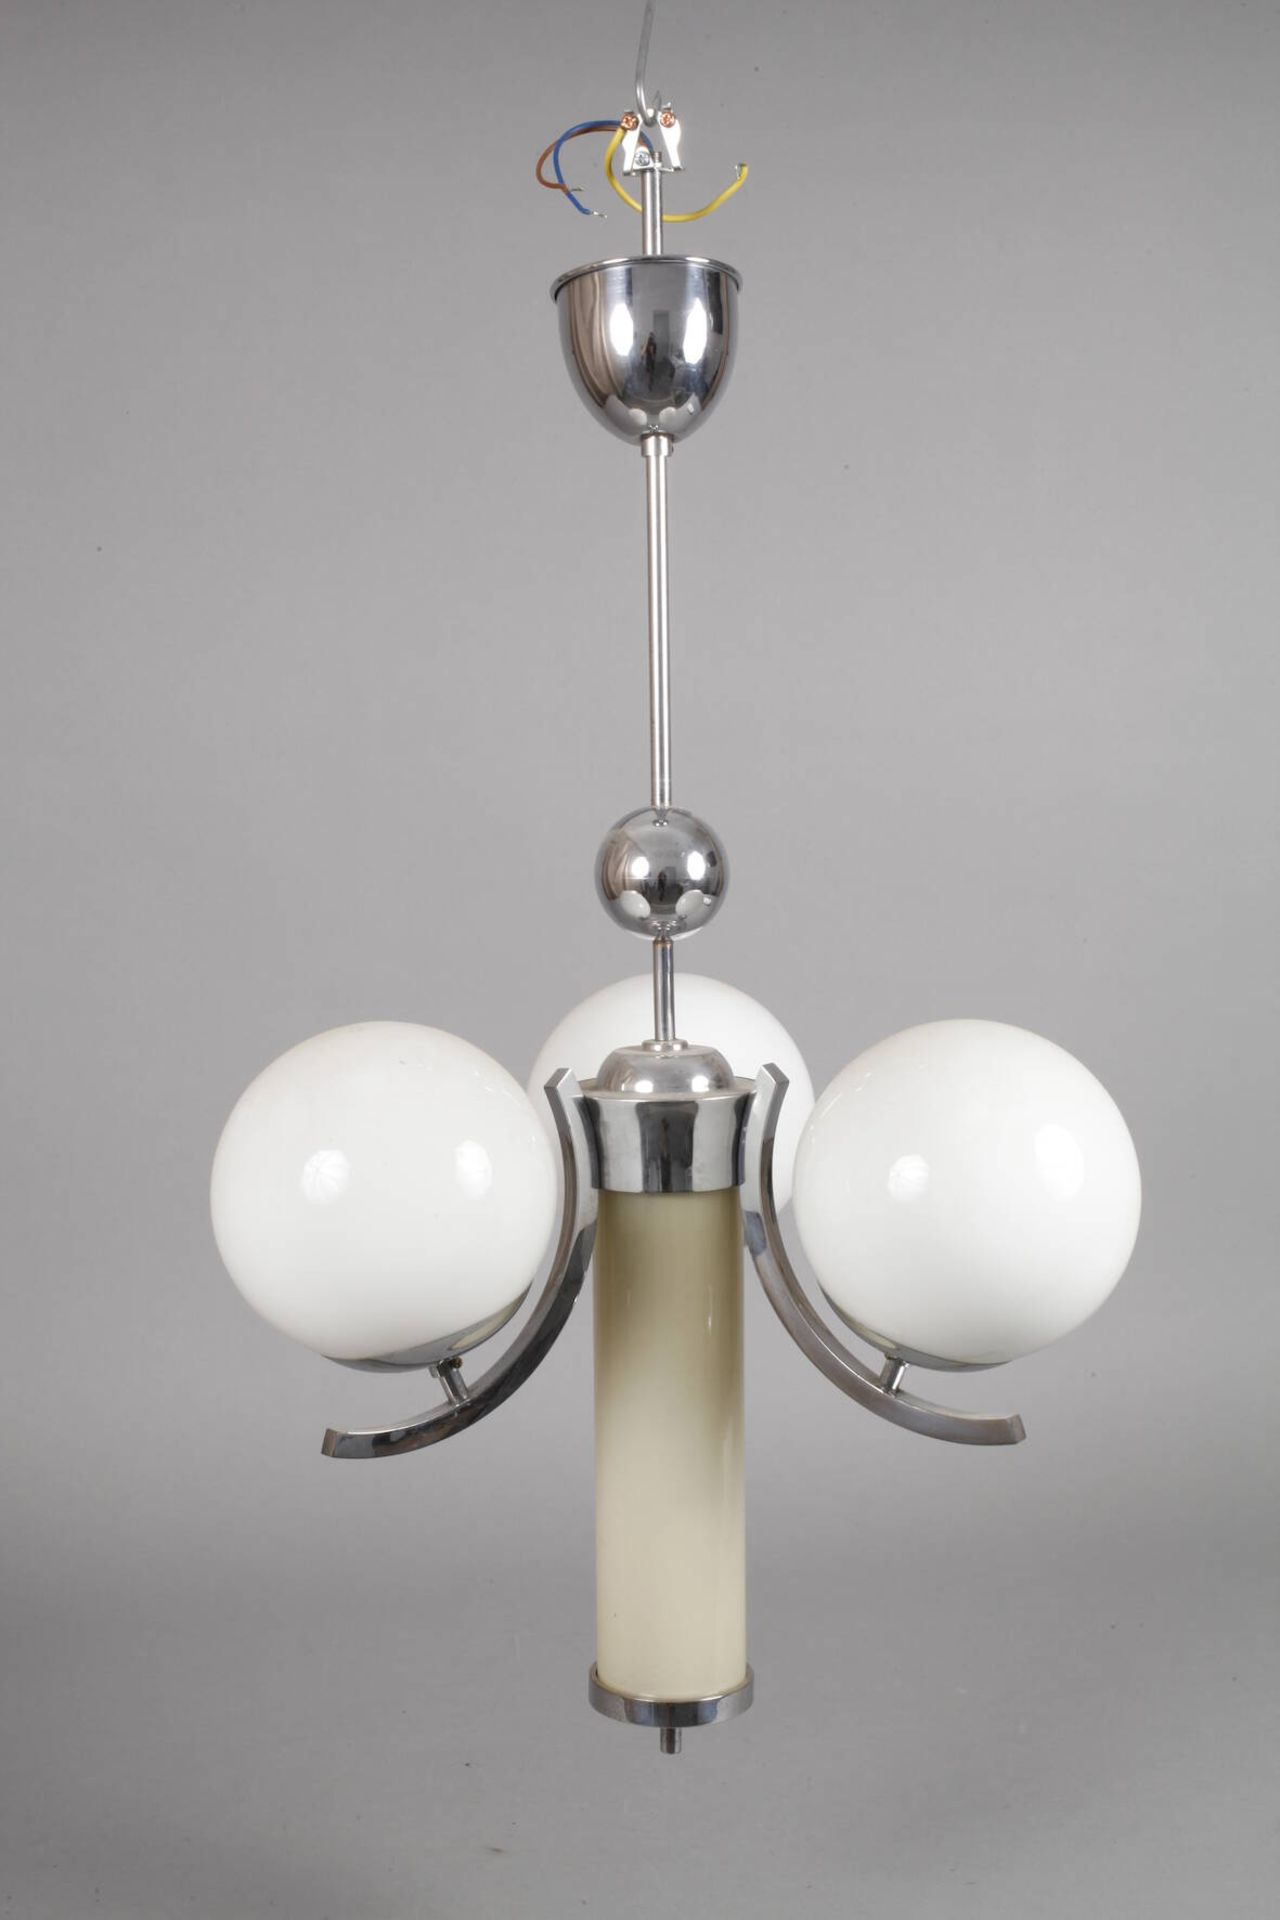 Drei Deckenlampen Art déco1920er Jahre, verchromte Metallgestänge mit jeweils drei kurzen, c- - Bild 5 aus 8